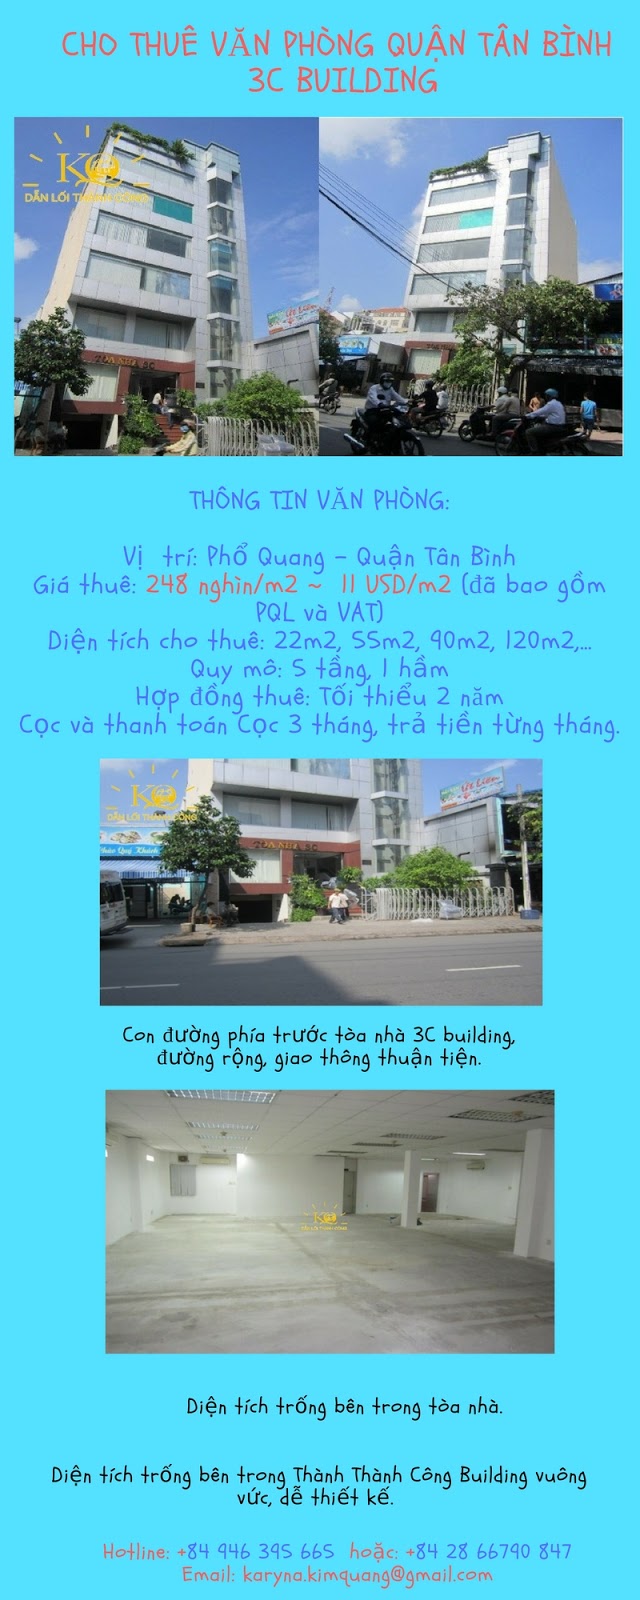 Cho thuê văn phòng quận Tân Bình 3C building